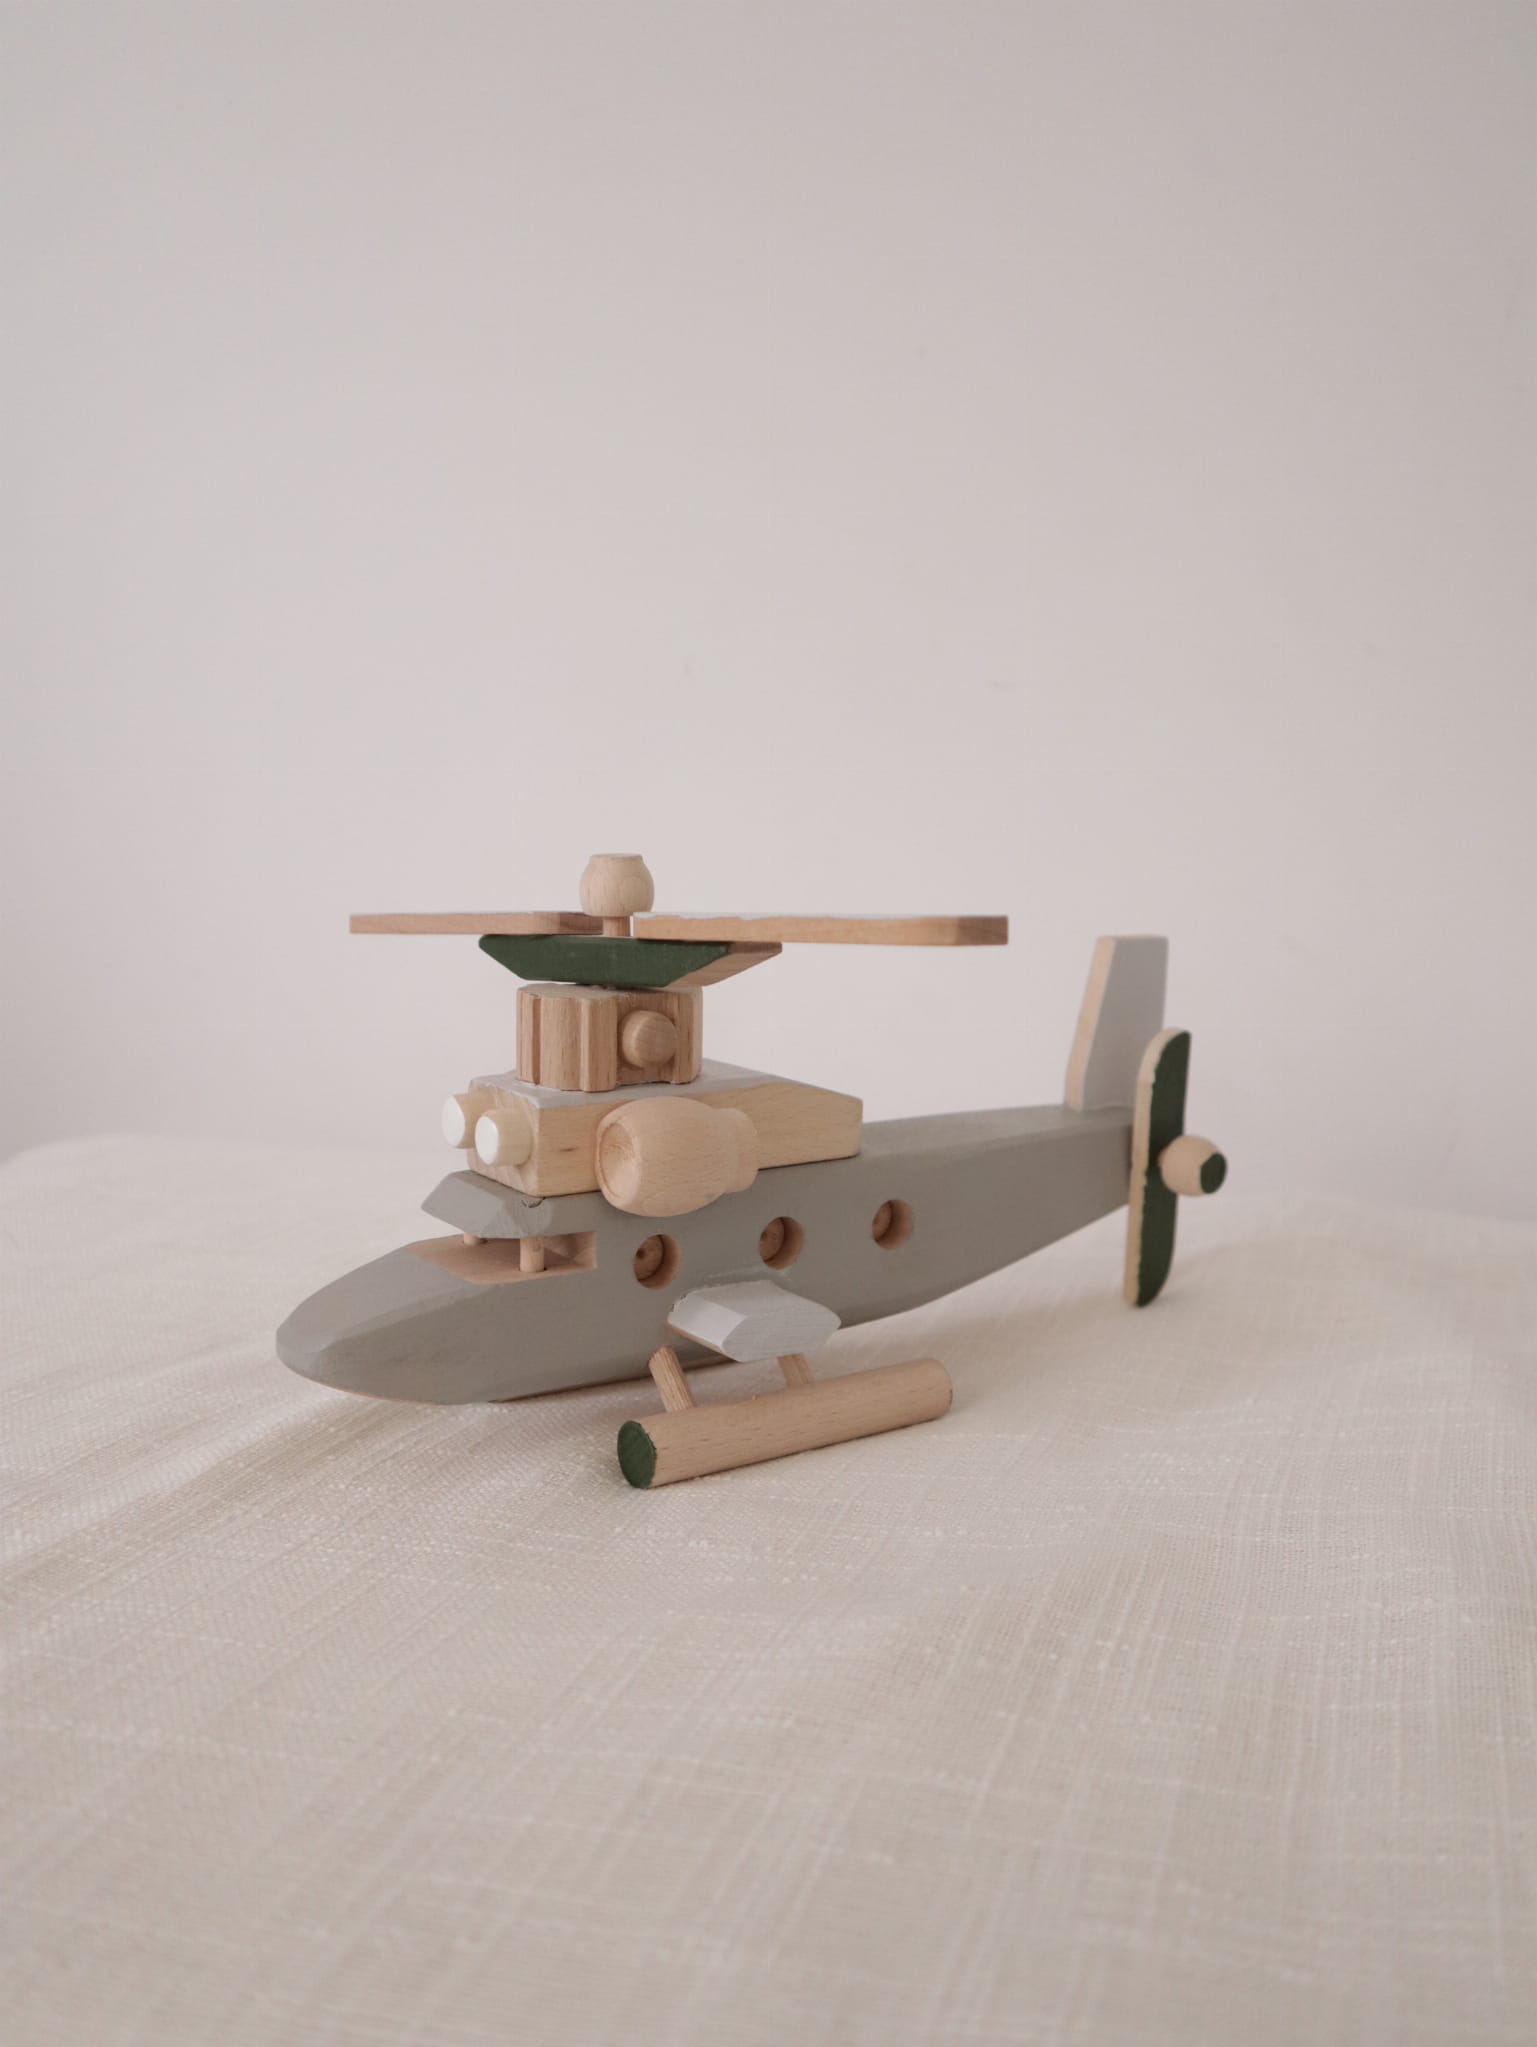 Drewniany helikopter - zabawka ponadczasowa